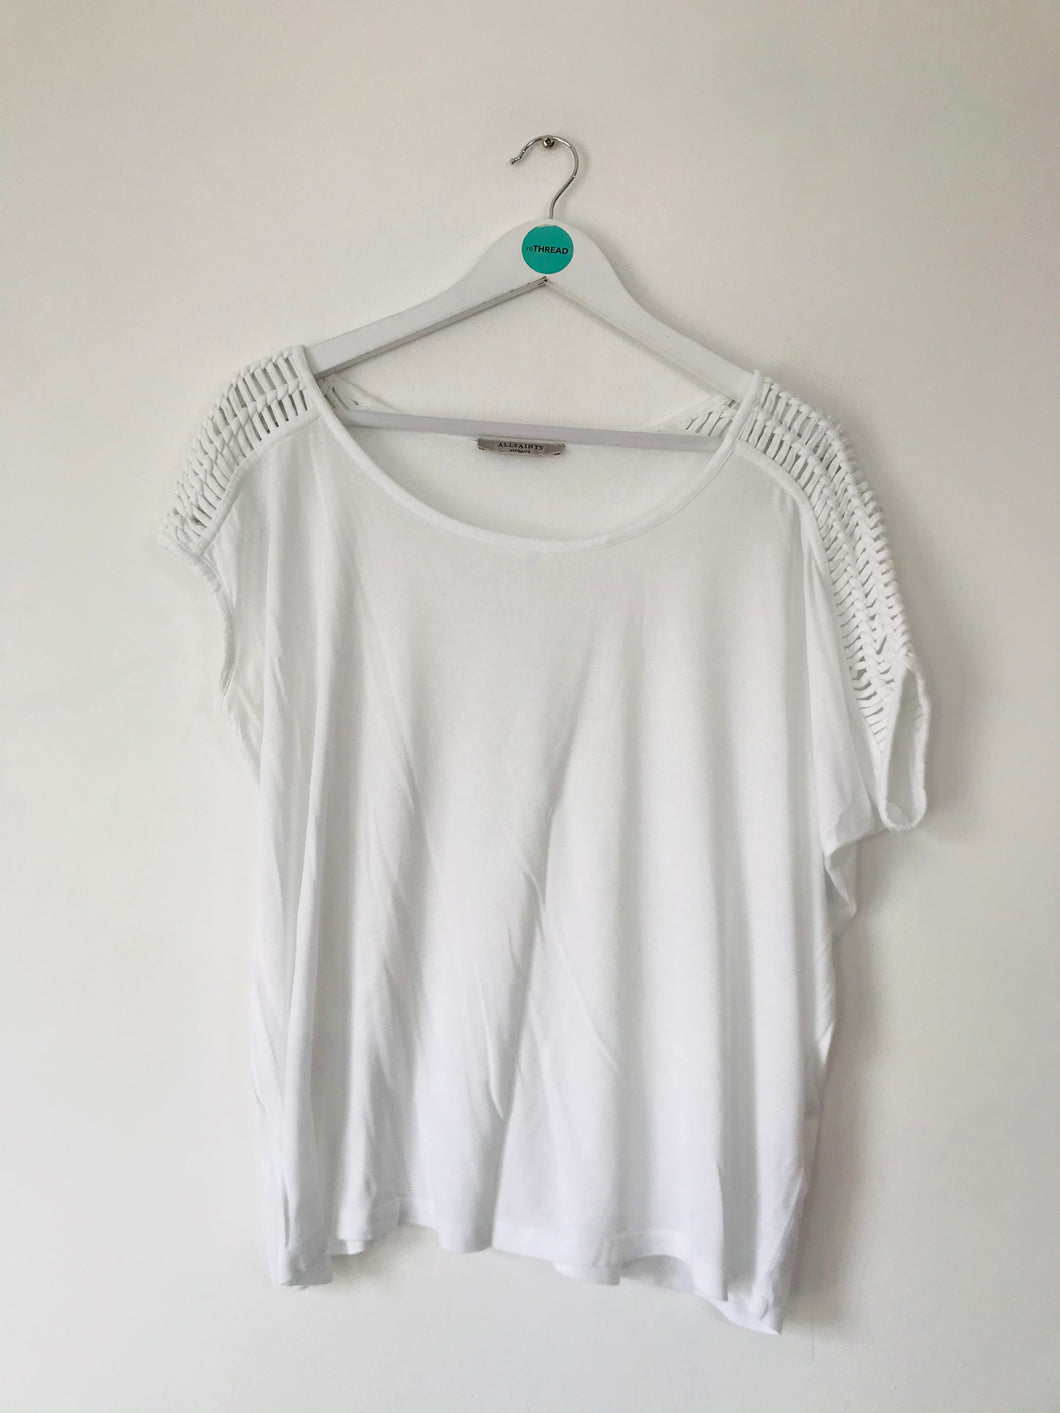 AllSaints Women’s Asymmetrical T-Shirt | M UK10 | White